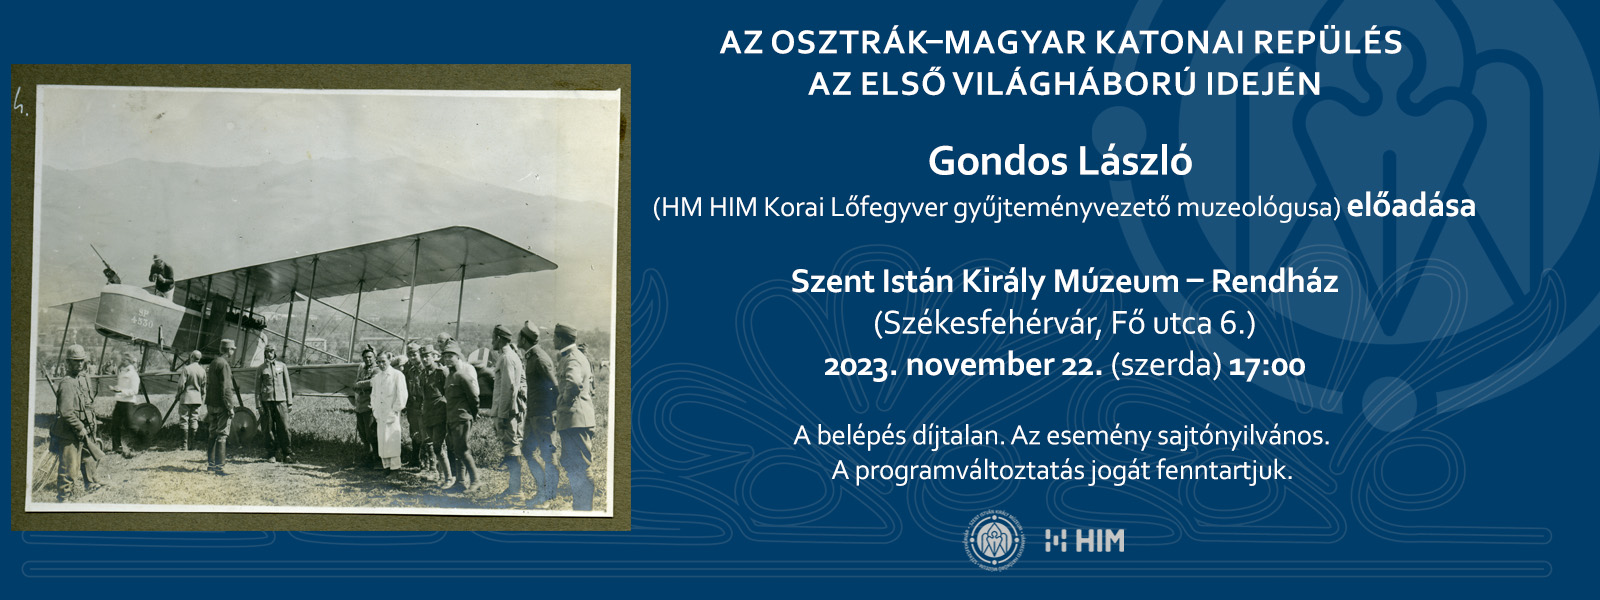 Az Osztrák-Magyar Monarchia légierejének történetéről tartanak előadást a Múzeumban november 22-én